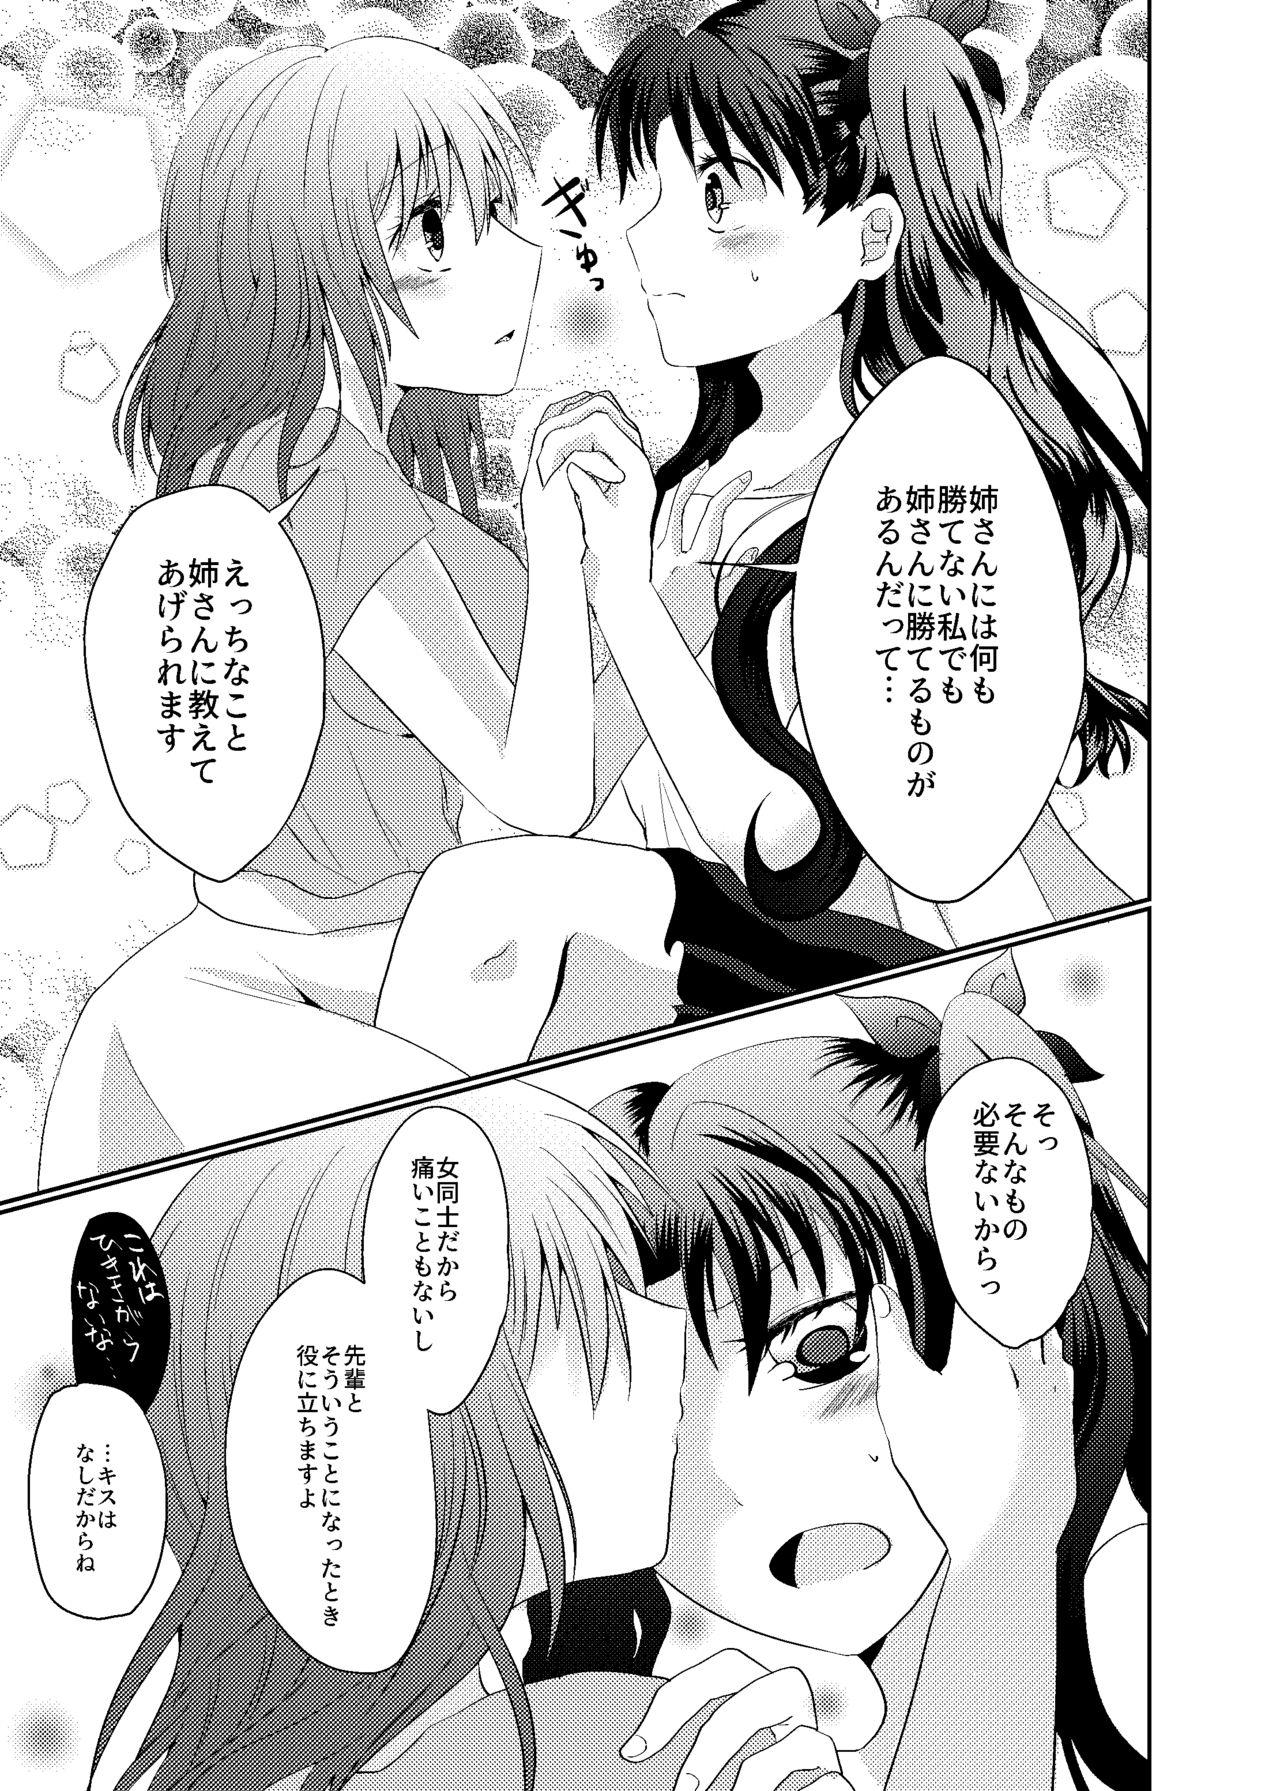 Ffm Tosaka Shimai no Atsui Natsu - Fate stay night Peituda - Page 7